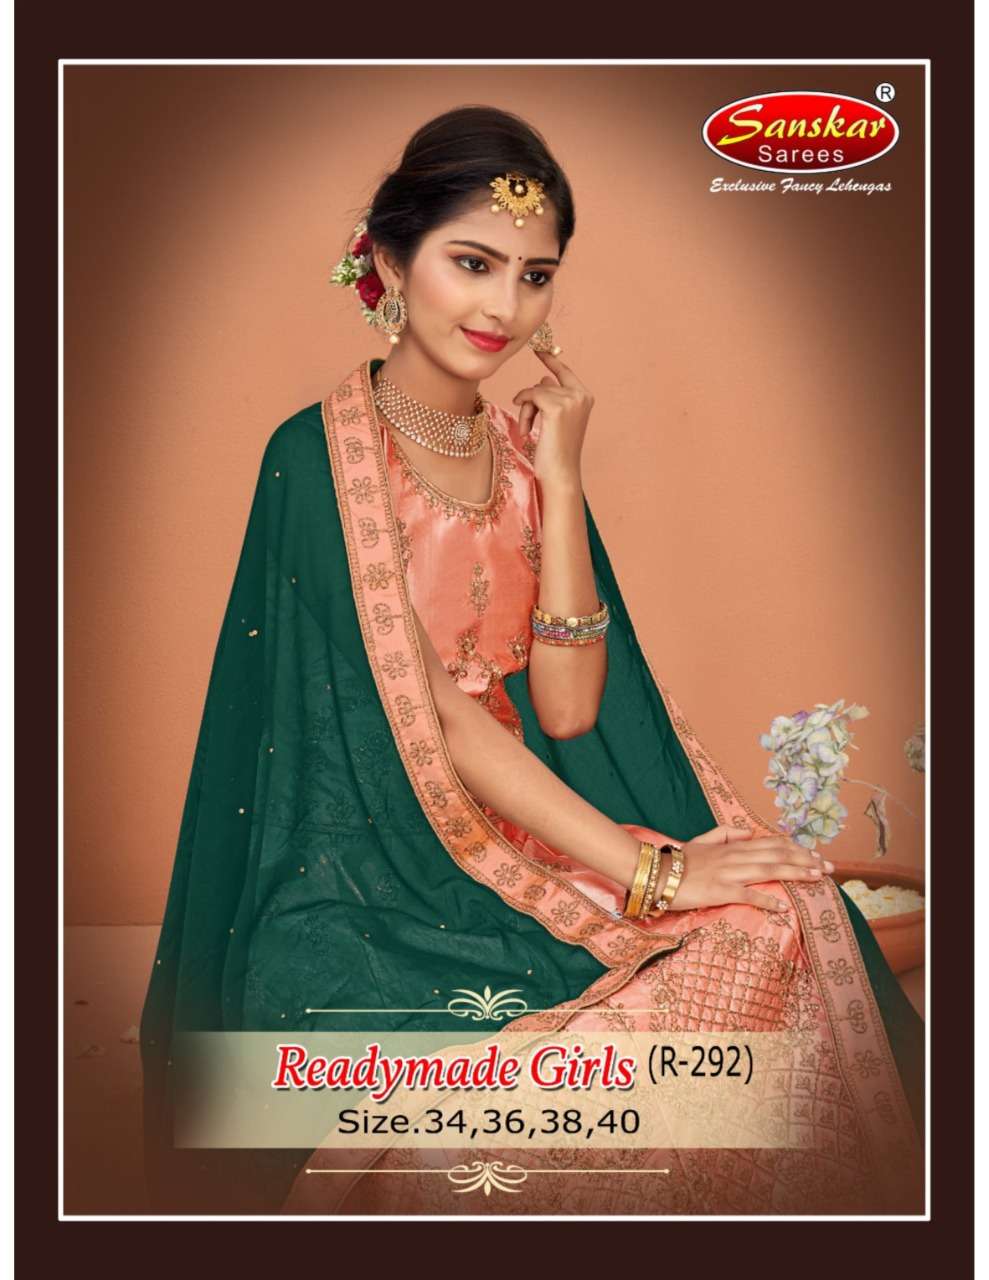 Sanskar Style Vol R 292 Readymade Girls Lehenga Choli Catalog Supplier